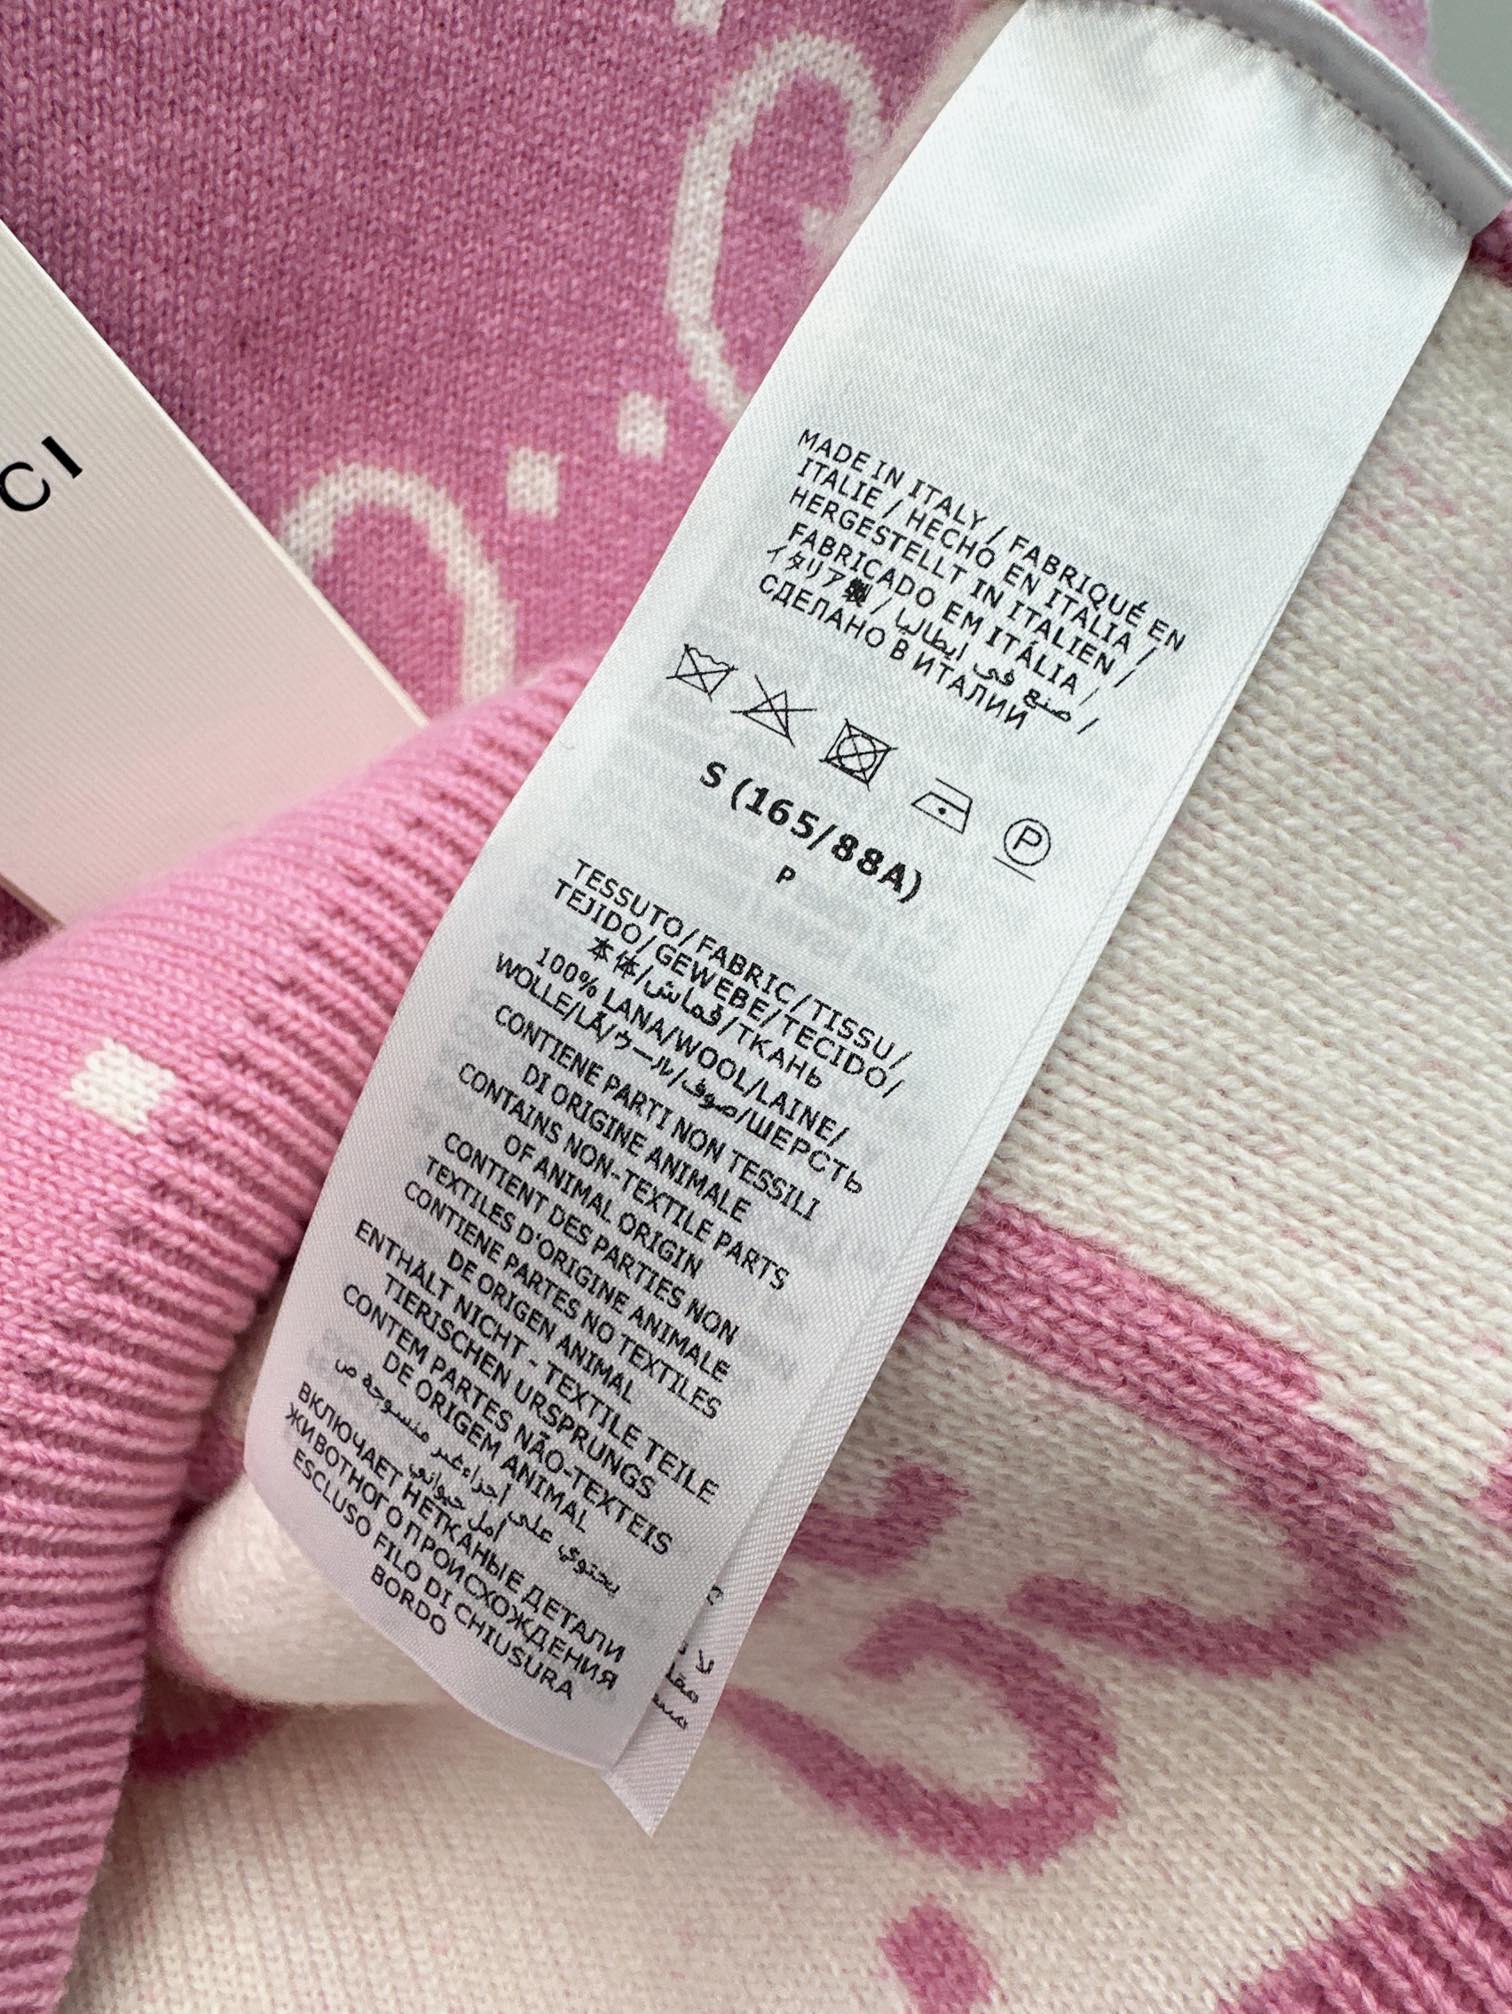 高版本Gu24Ss春夏最新款粉GG提织短袖针织衫粉色真的太少女心了很难让人不爱定纺超亲肤百分百羊毛纱线粗